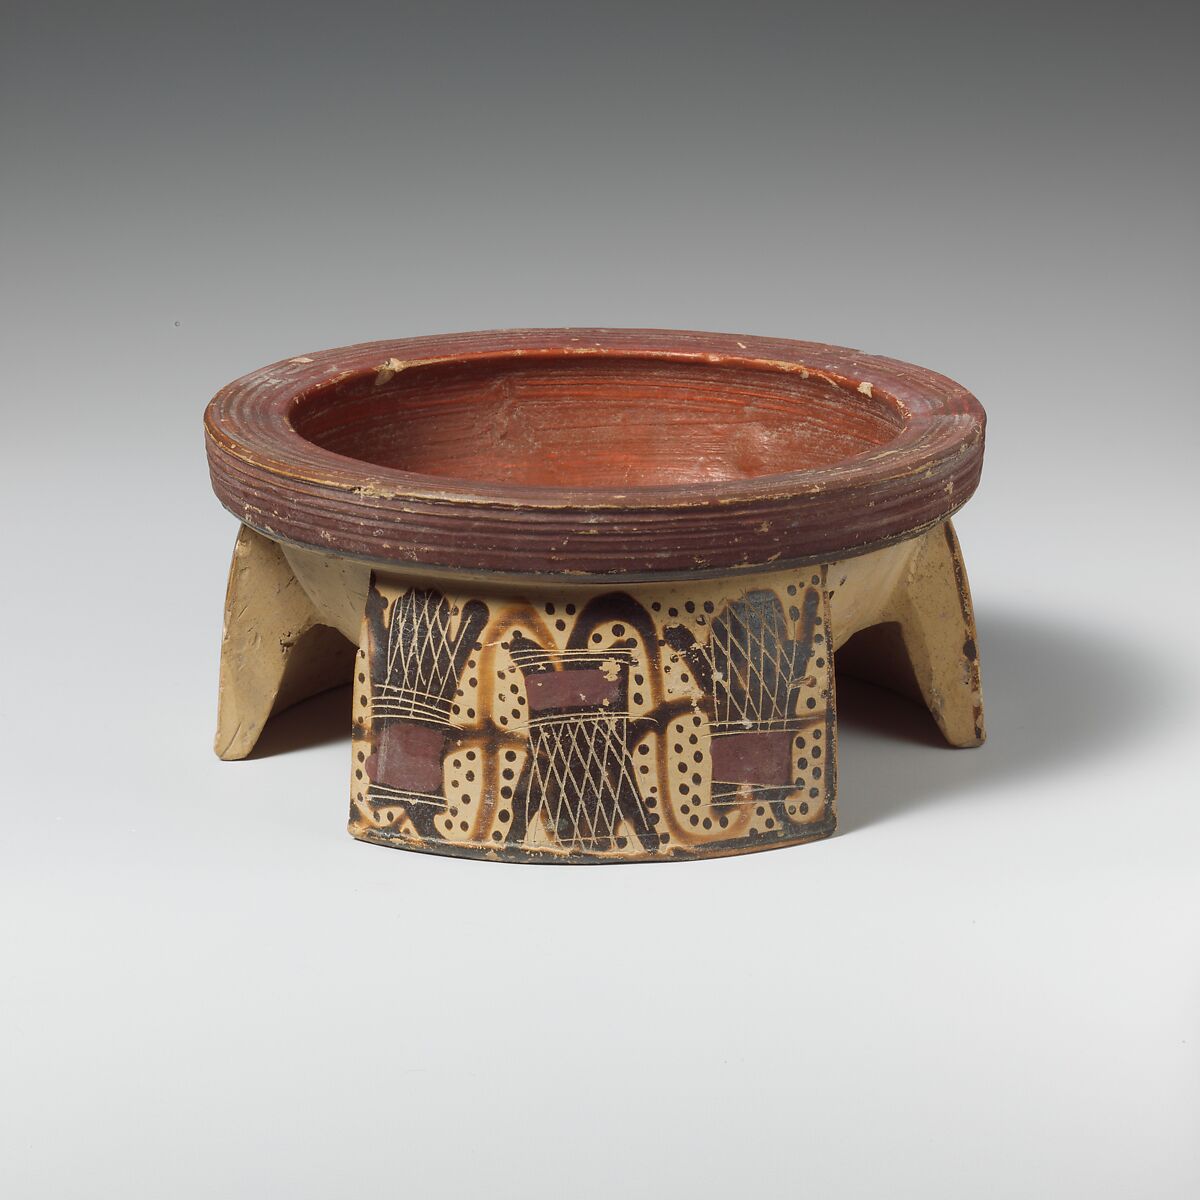 Terracotta tripod pyxis (box), Terracotta, Greek, Corinthian 